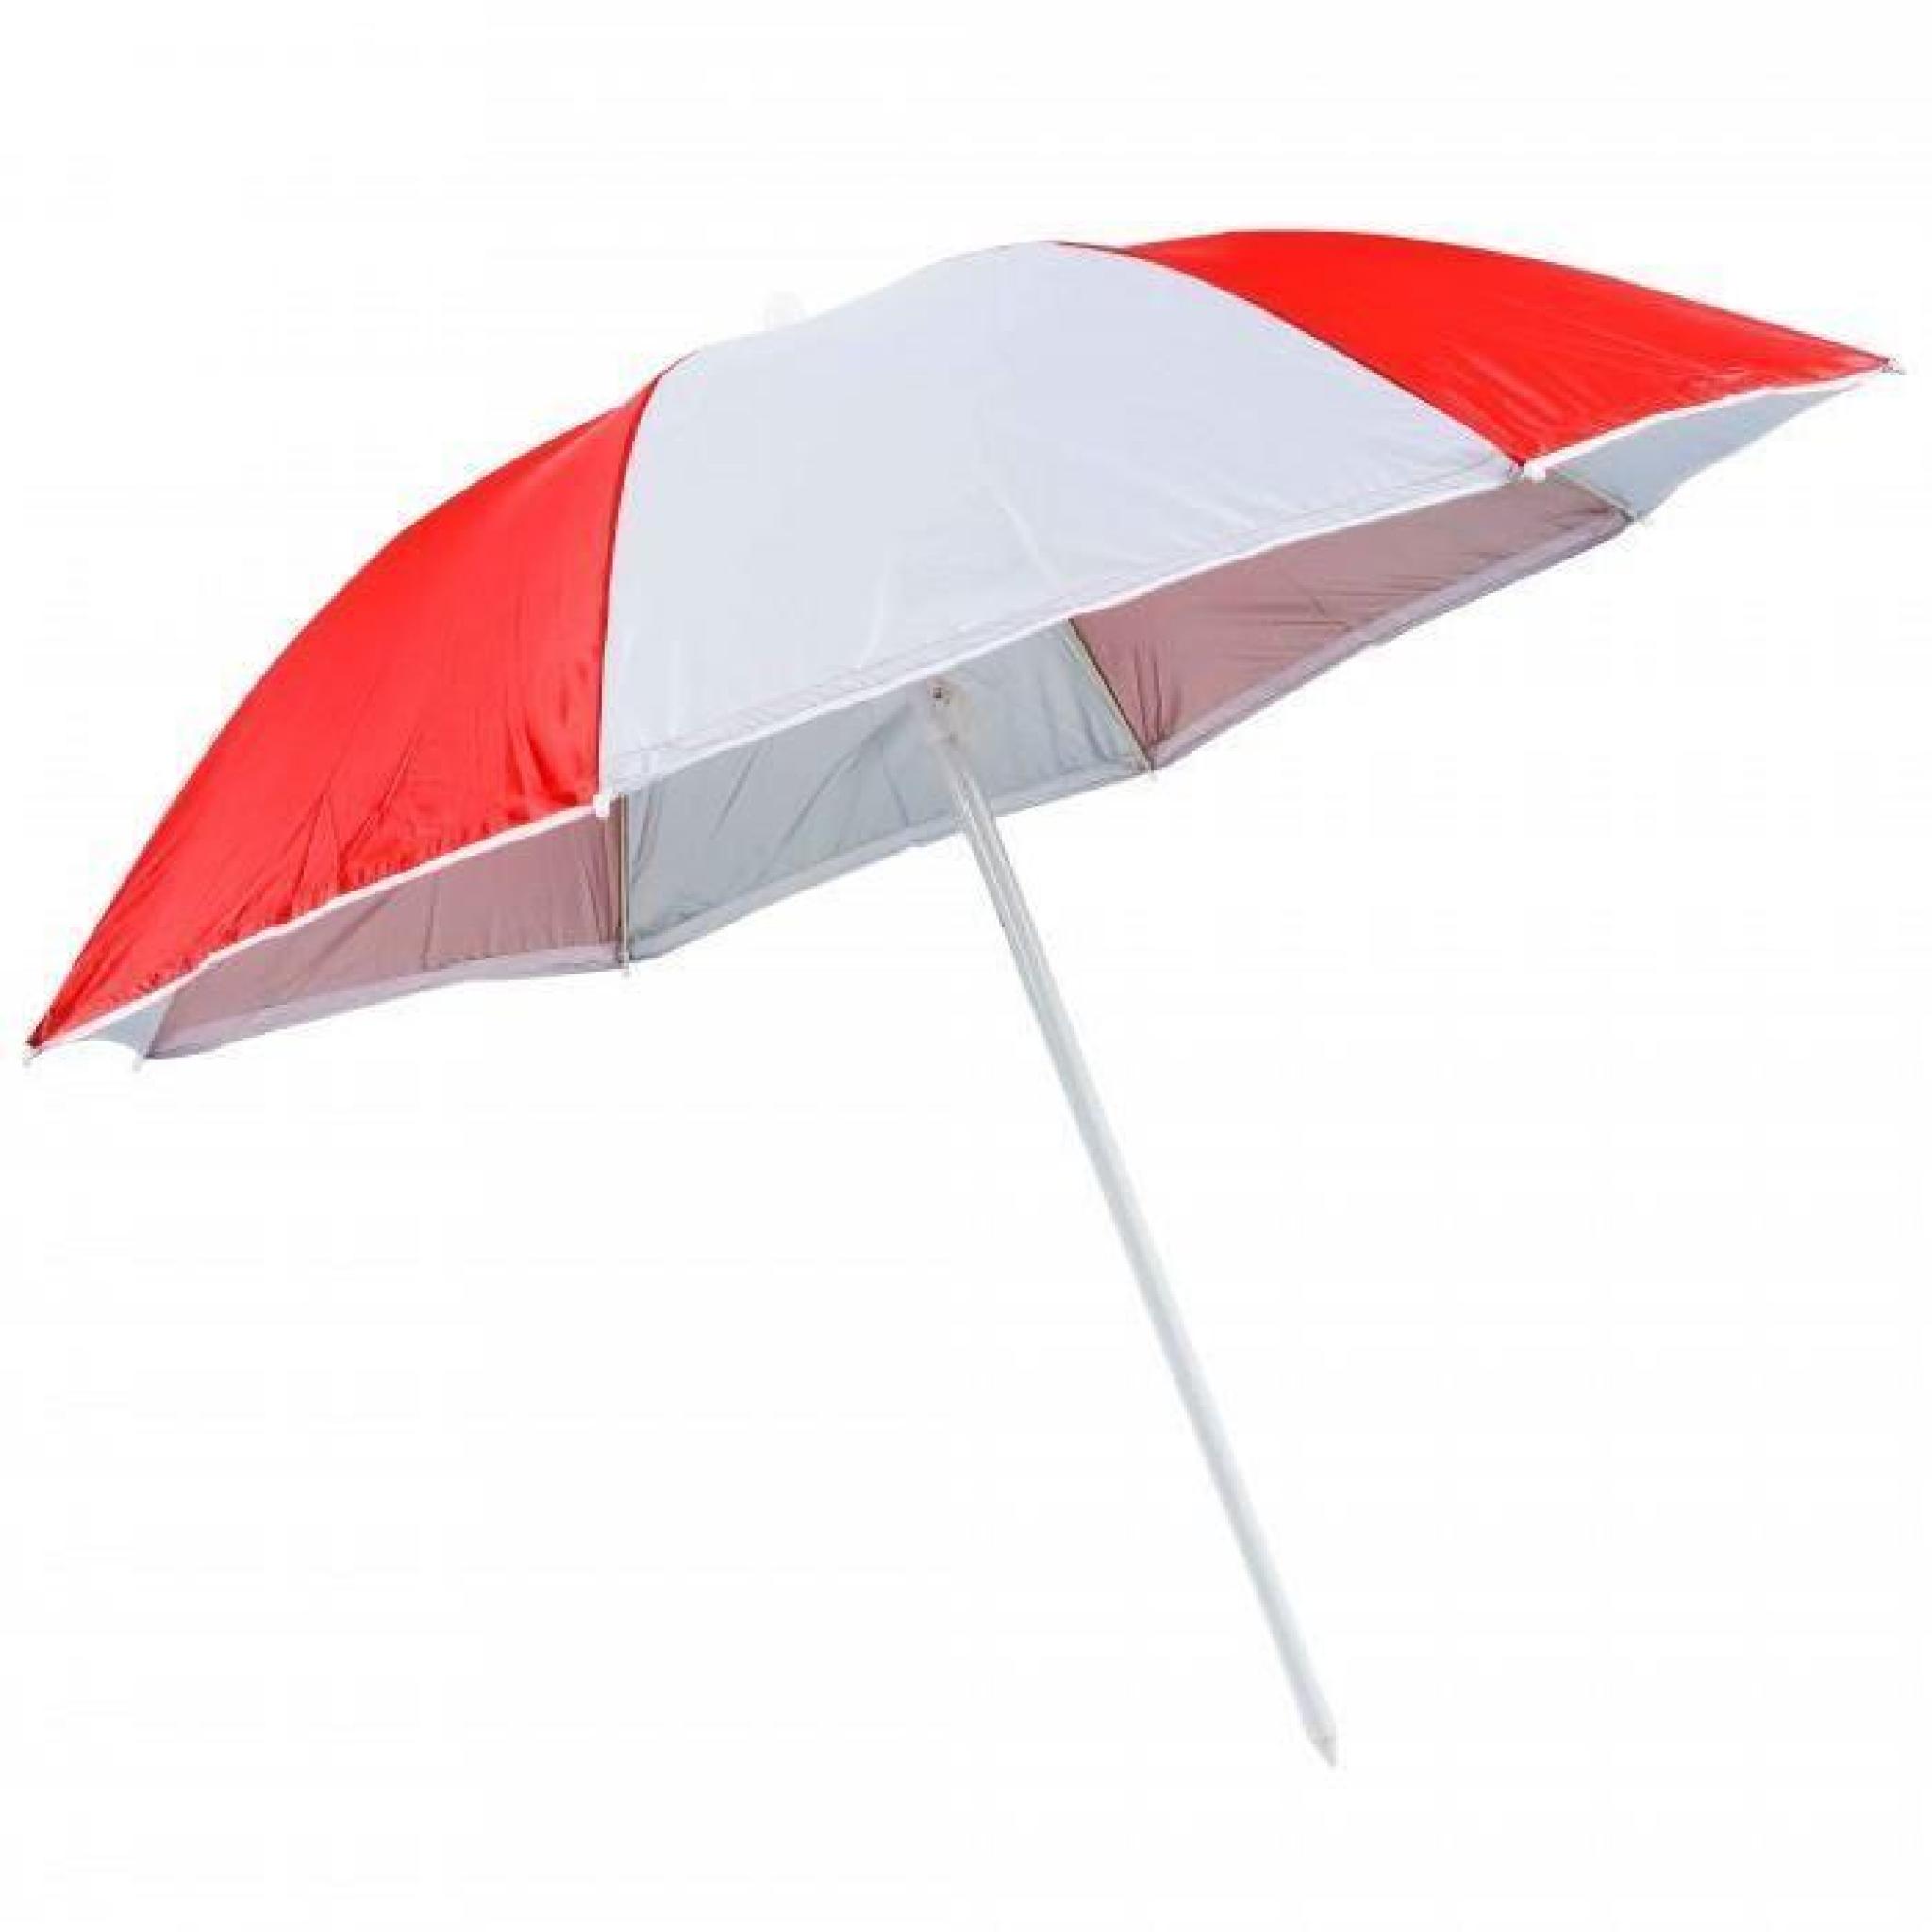 Parasol de plage bicolore rouge et blanc, reflechit les UV jusqu'a 98%. Diametre du parasol 150cm. Parasol avec rabat